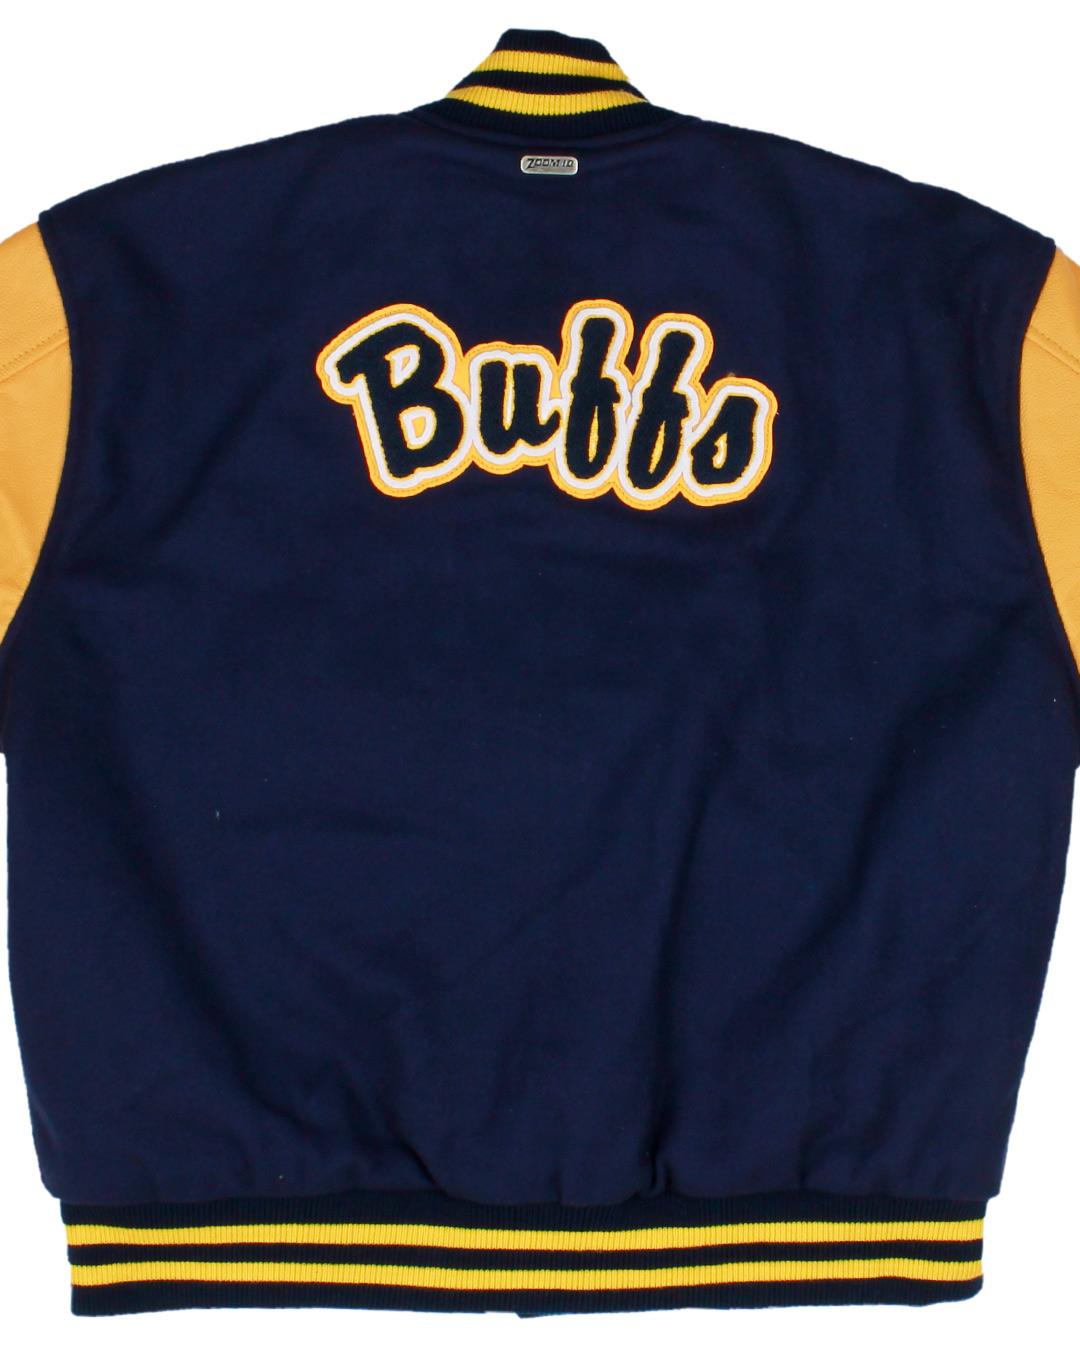 Greybull High School Varsity Jacket, Greybull, WY - Back